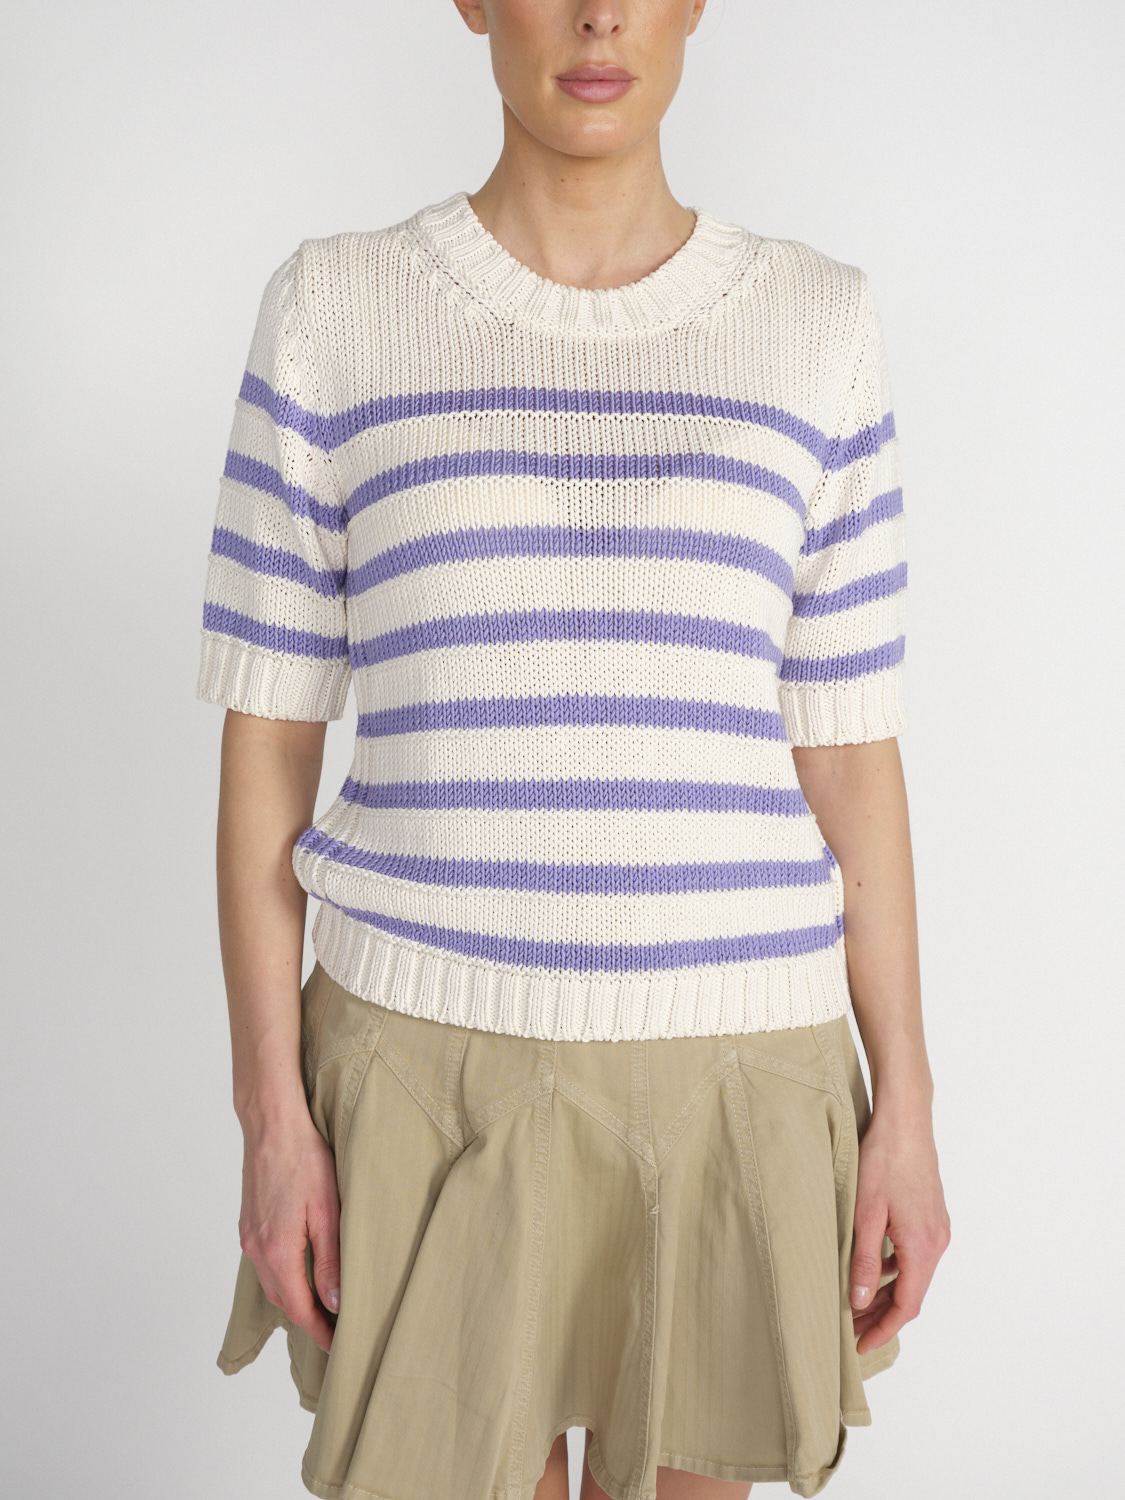 Iris von Arnim Pallas - Short-sleeved sweater with a striped design  white S